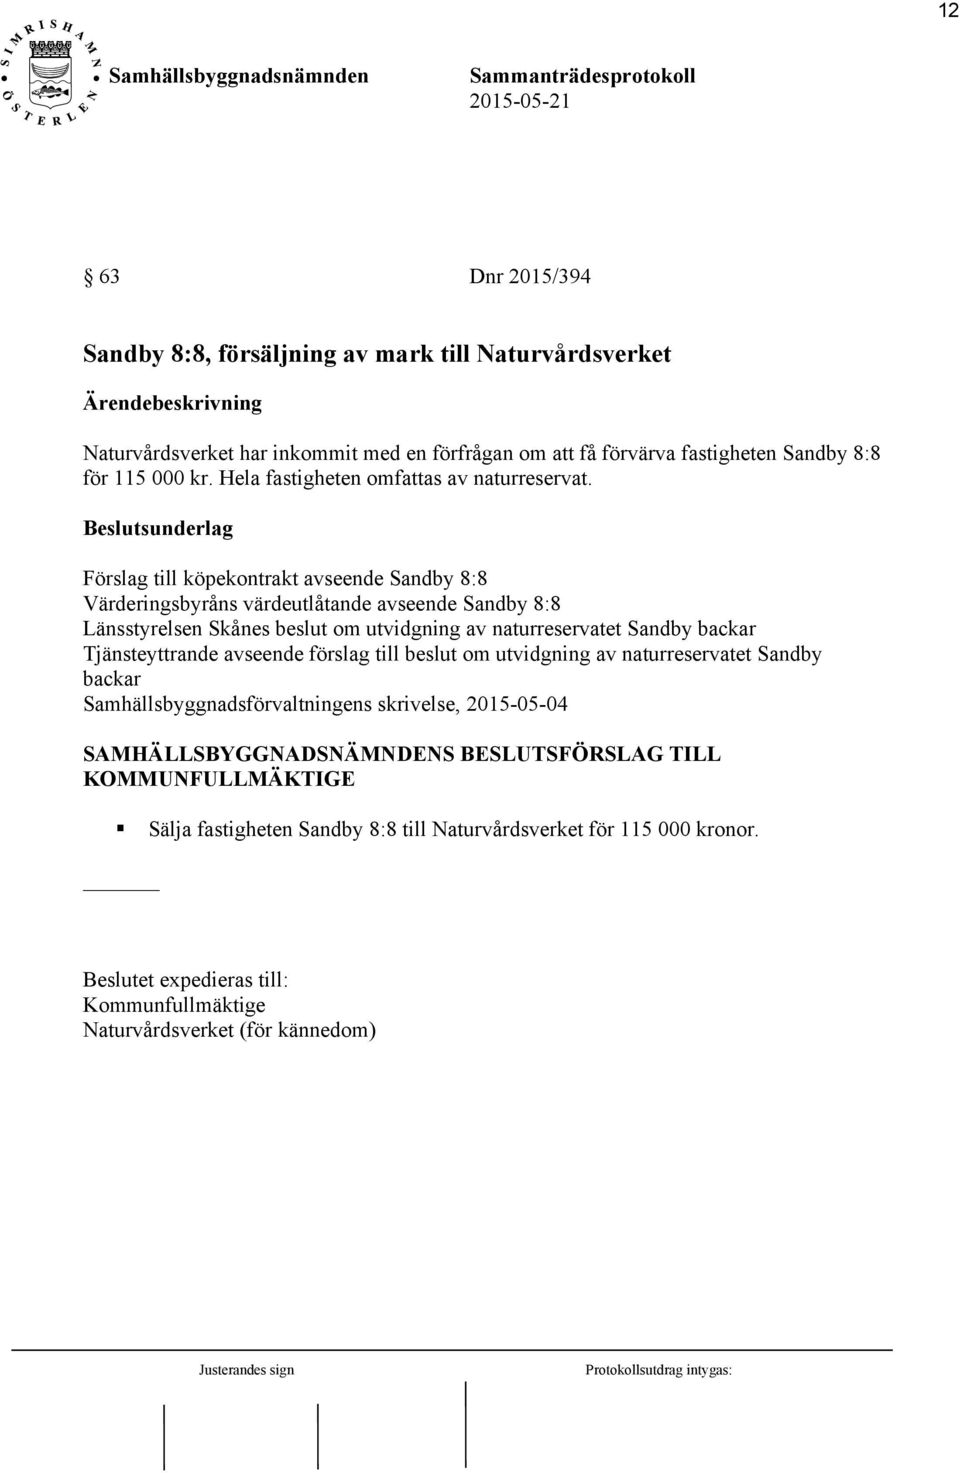 Förslag till köpekontrakt avseende Sandby 8:8 Värderingsbyråns värdeutlåtande avseende Sandby 8:8 Länsstyrelsen Skånes beslut om utvidgning av naturreservatet Sandby backar